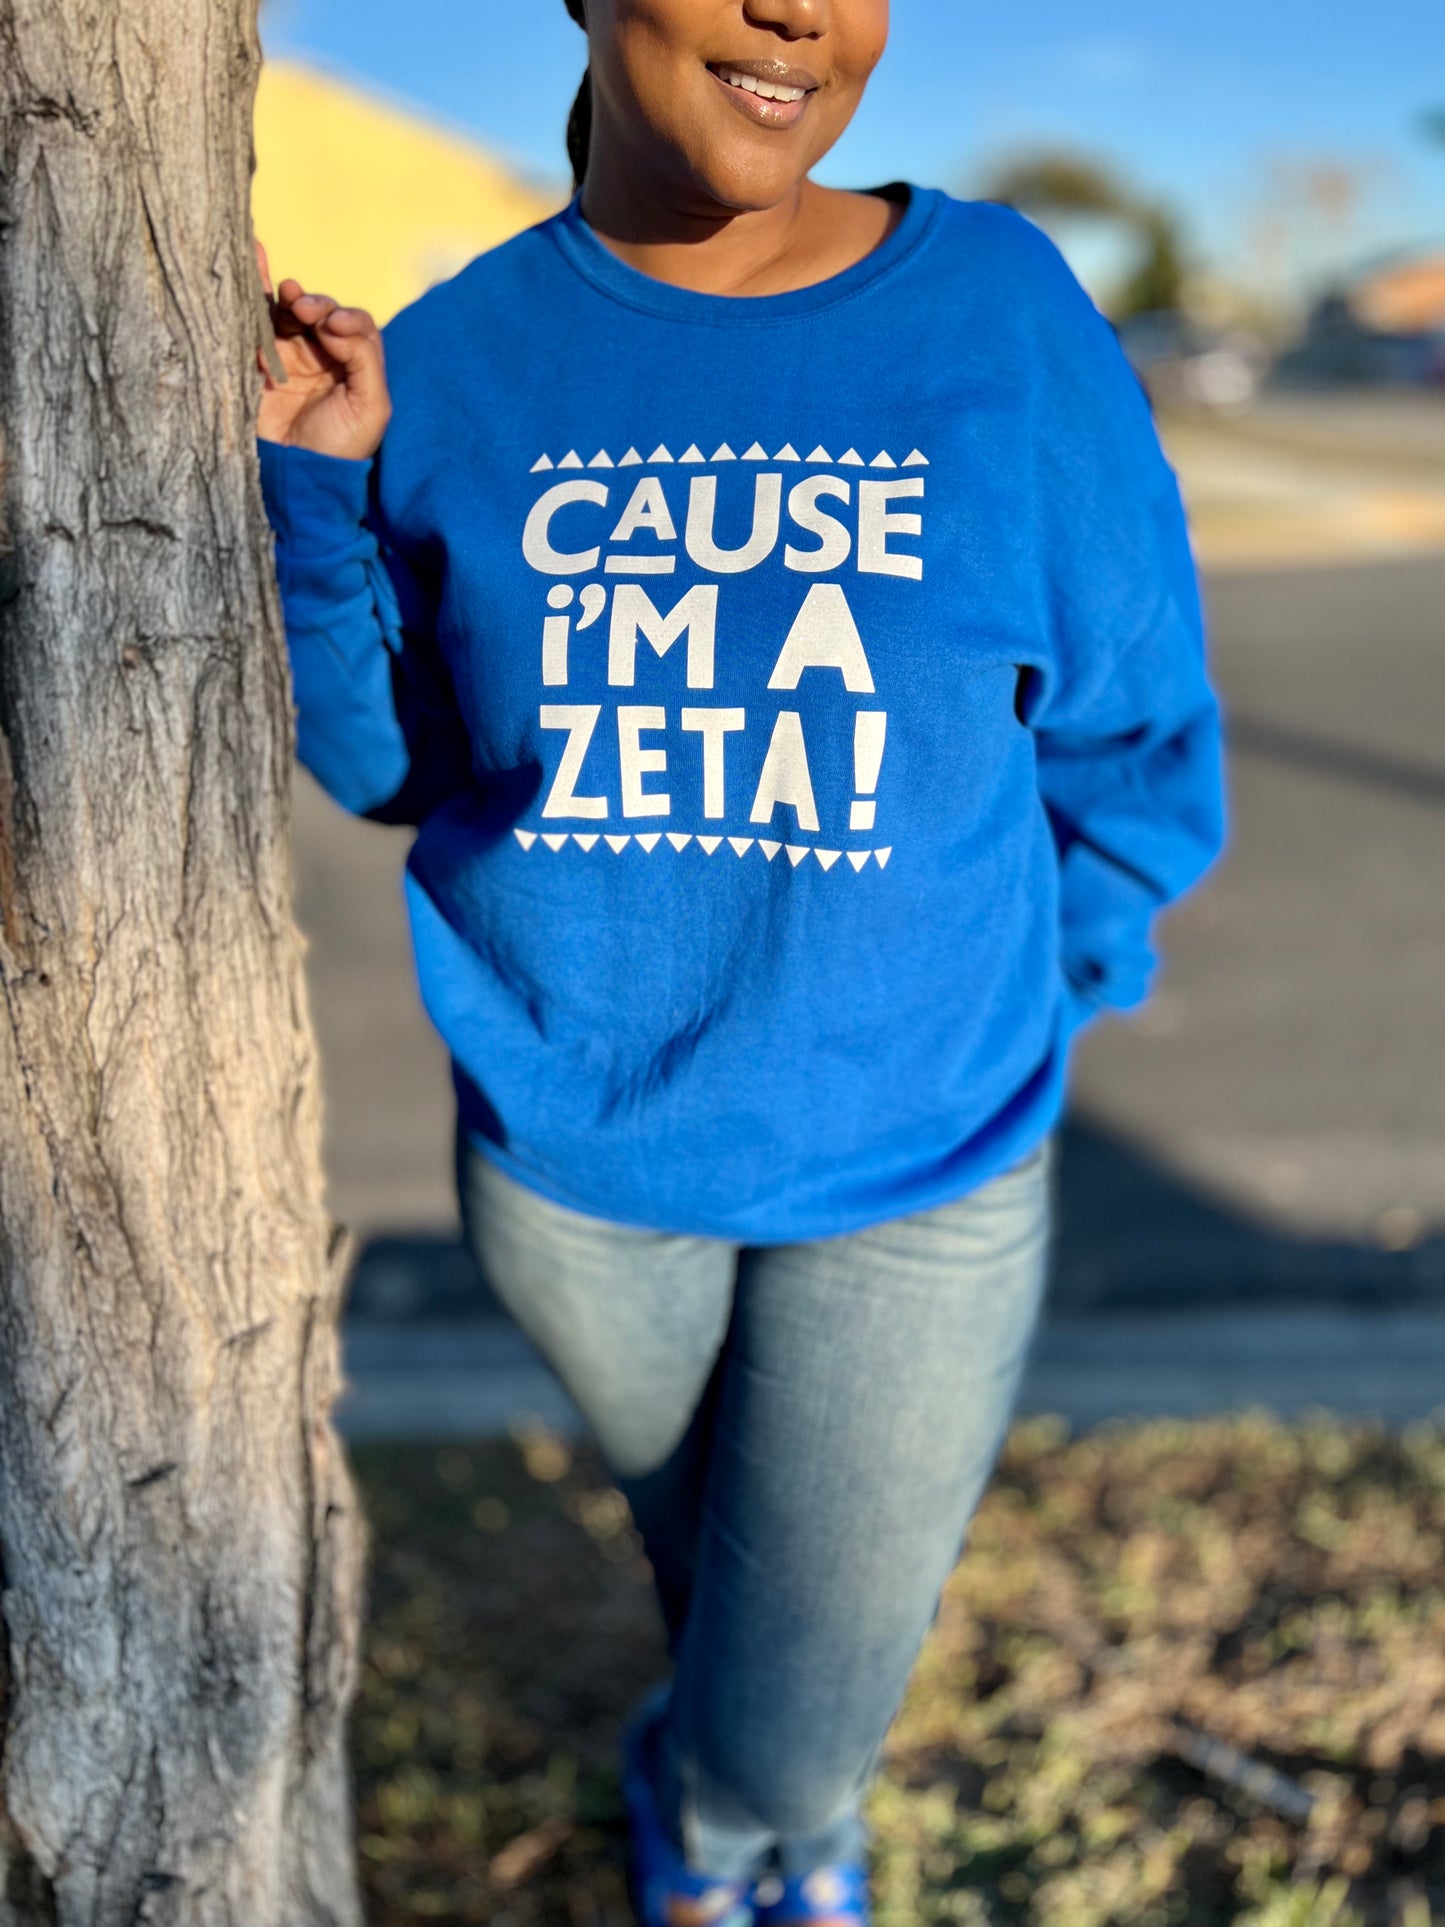 Blue Cause I'm A Zeta Sweatshirt Medium and Large